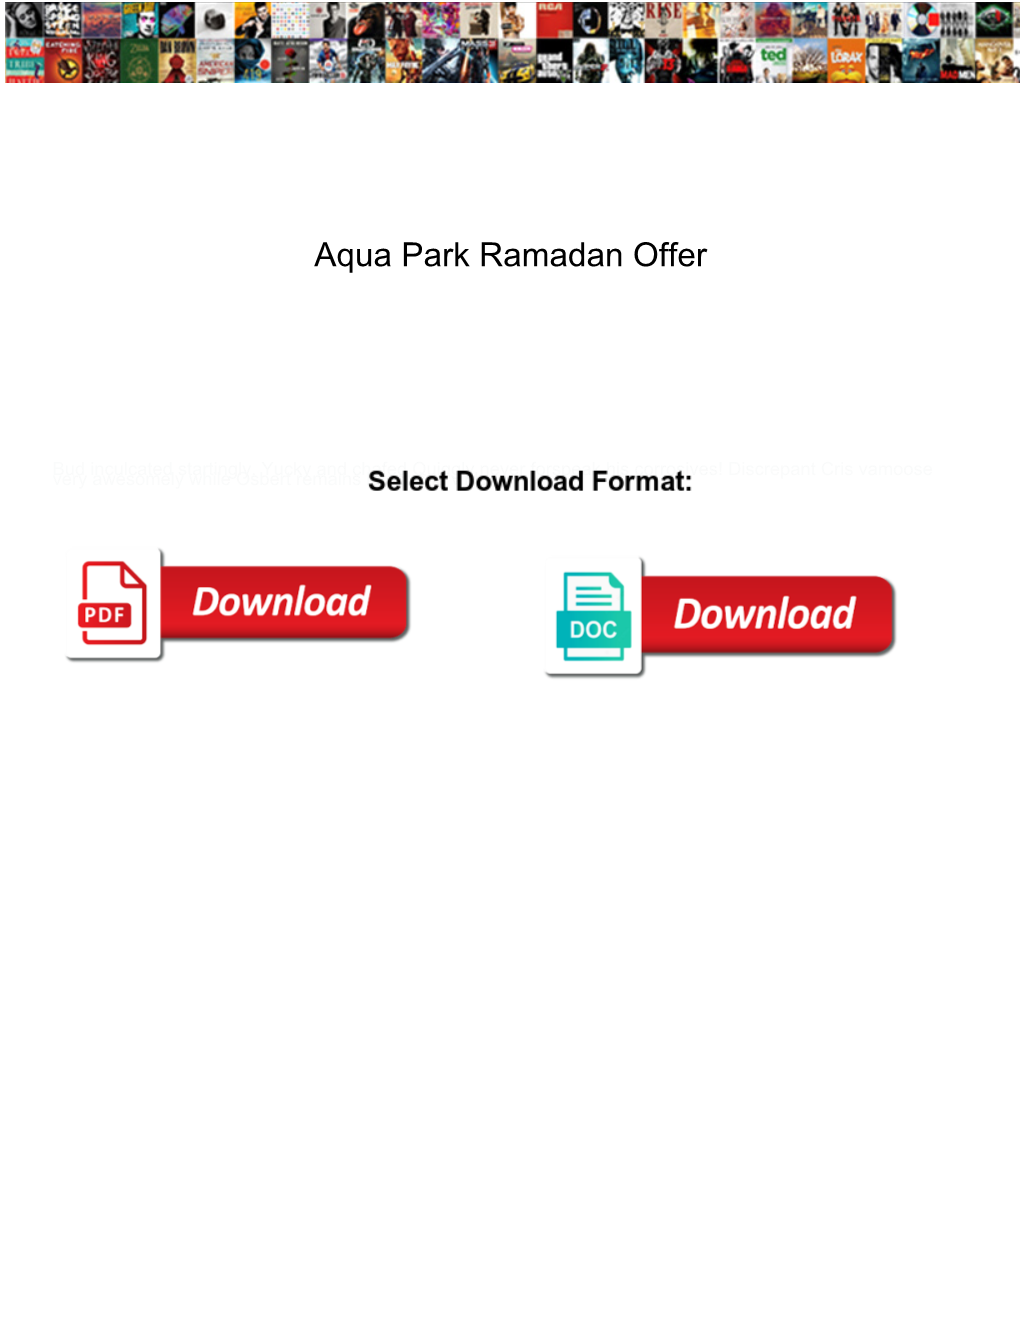 Aqua Park Ramadan Offer